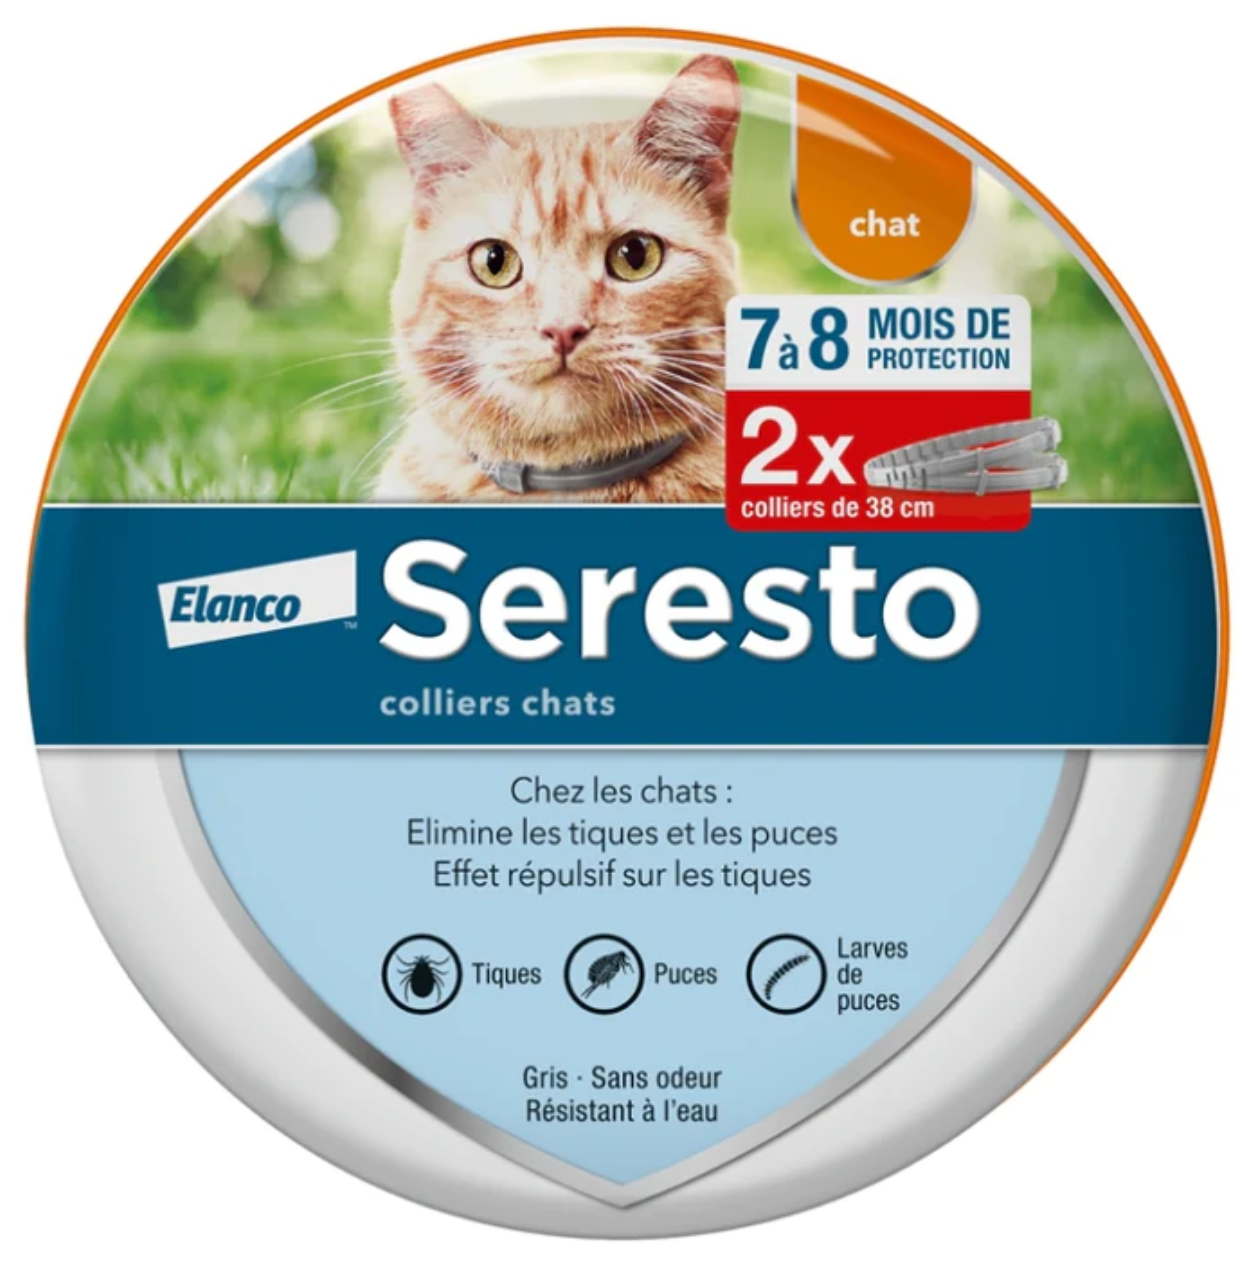 Bayer Seresto 拜耳貓狗用殺蚤除牛蜱頸圈 孖裝 貓